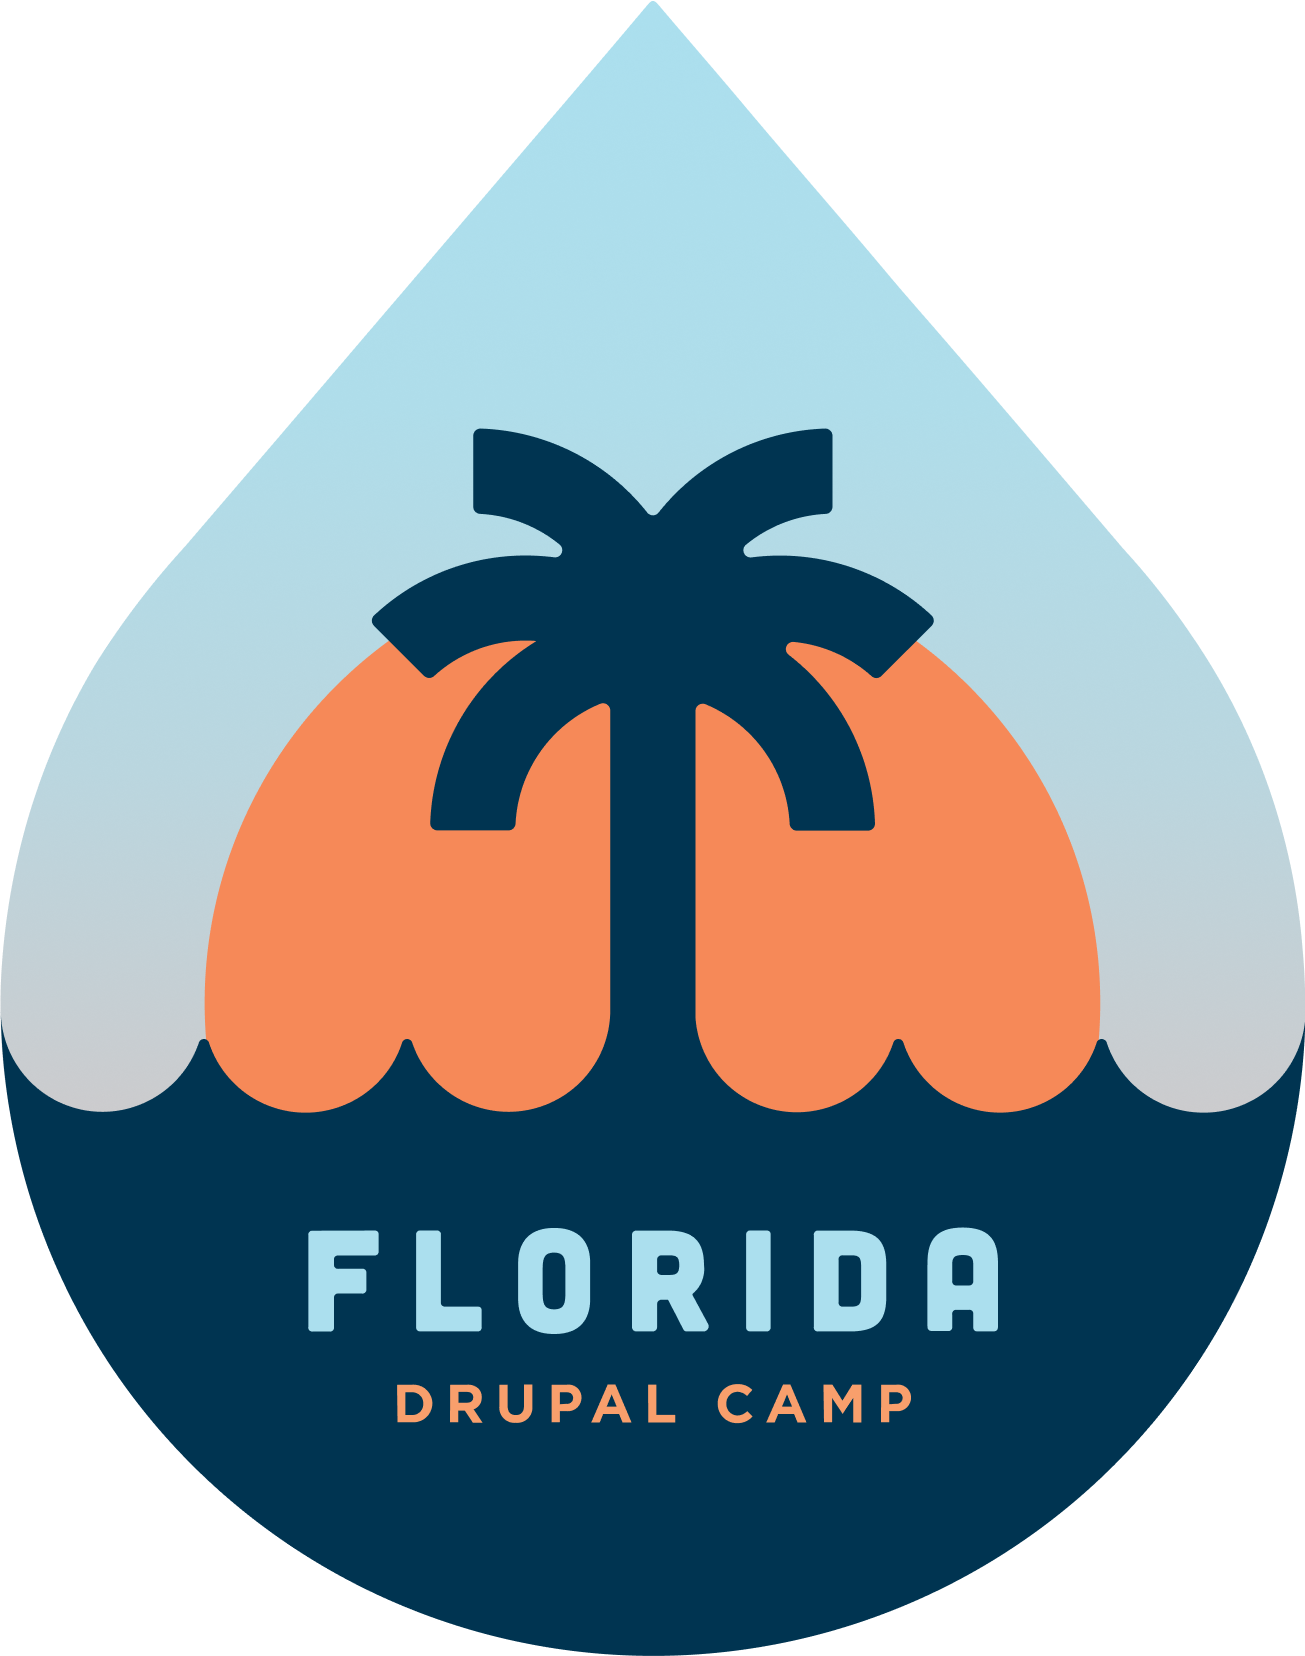 Florida DrupalCamp